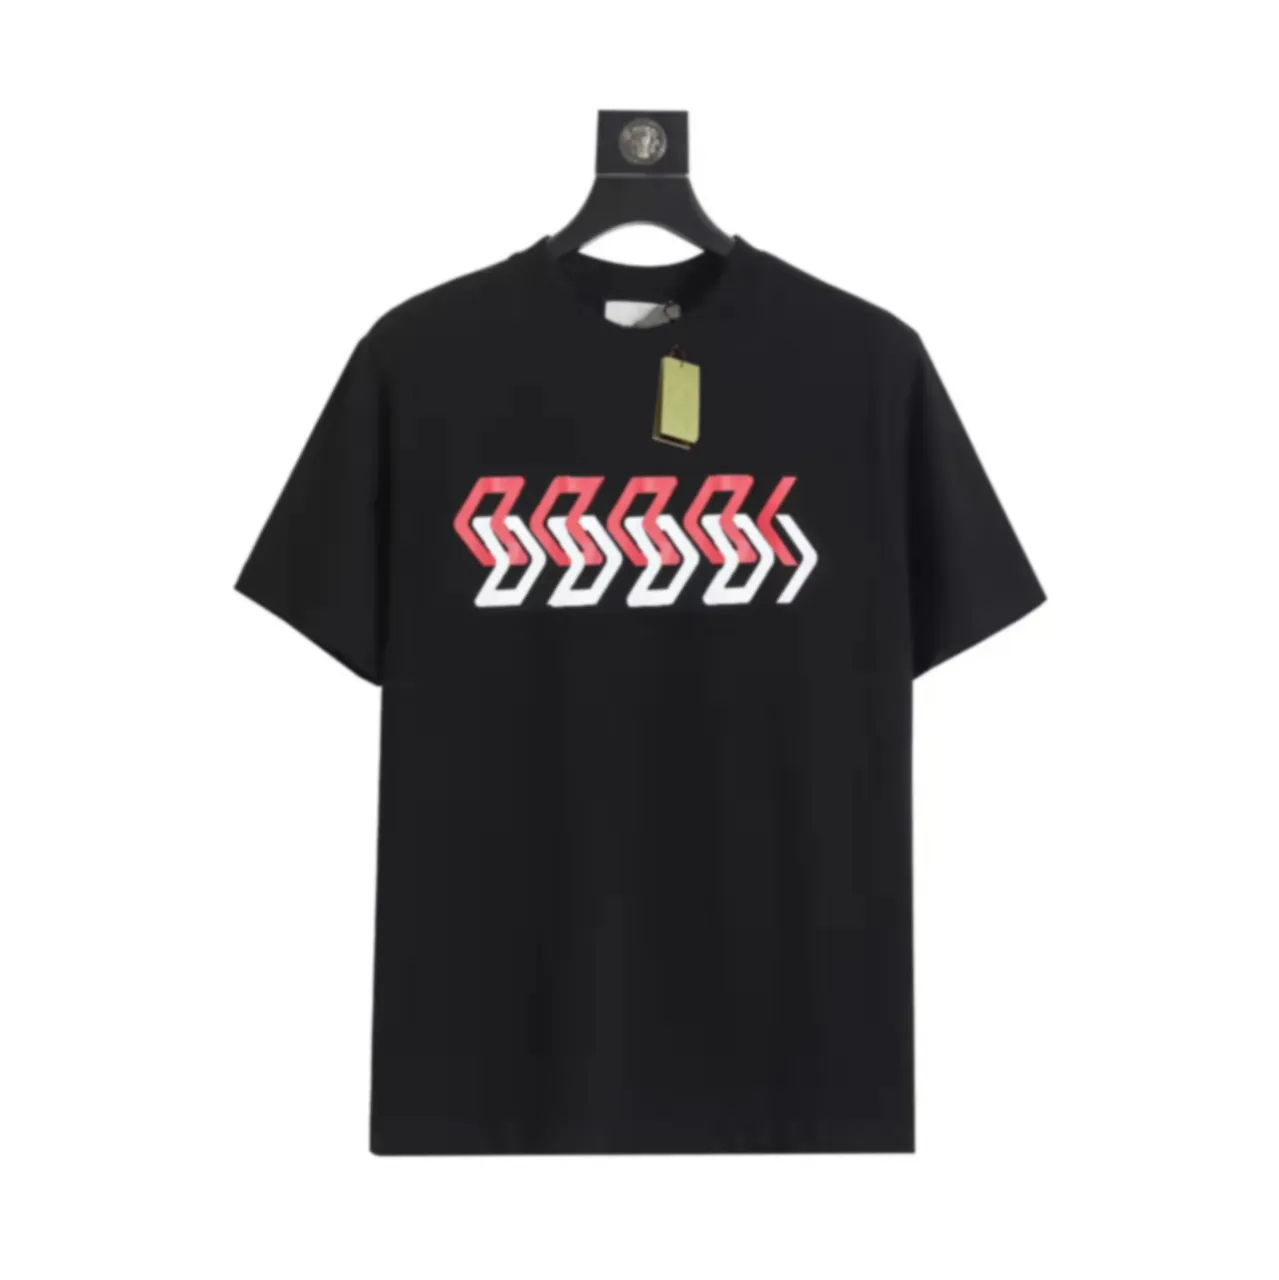 Man Tee Diseñador Flash Designer Camisetas para la camiseta de la mujer Manija Manga de verano con ropa Tops de ropa de verano Correr